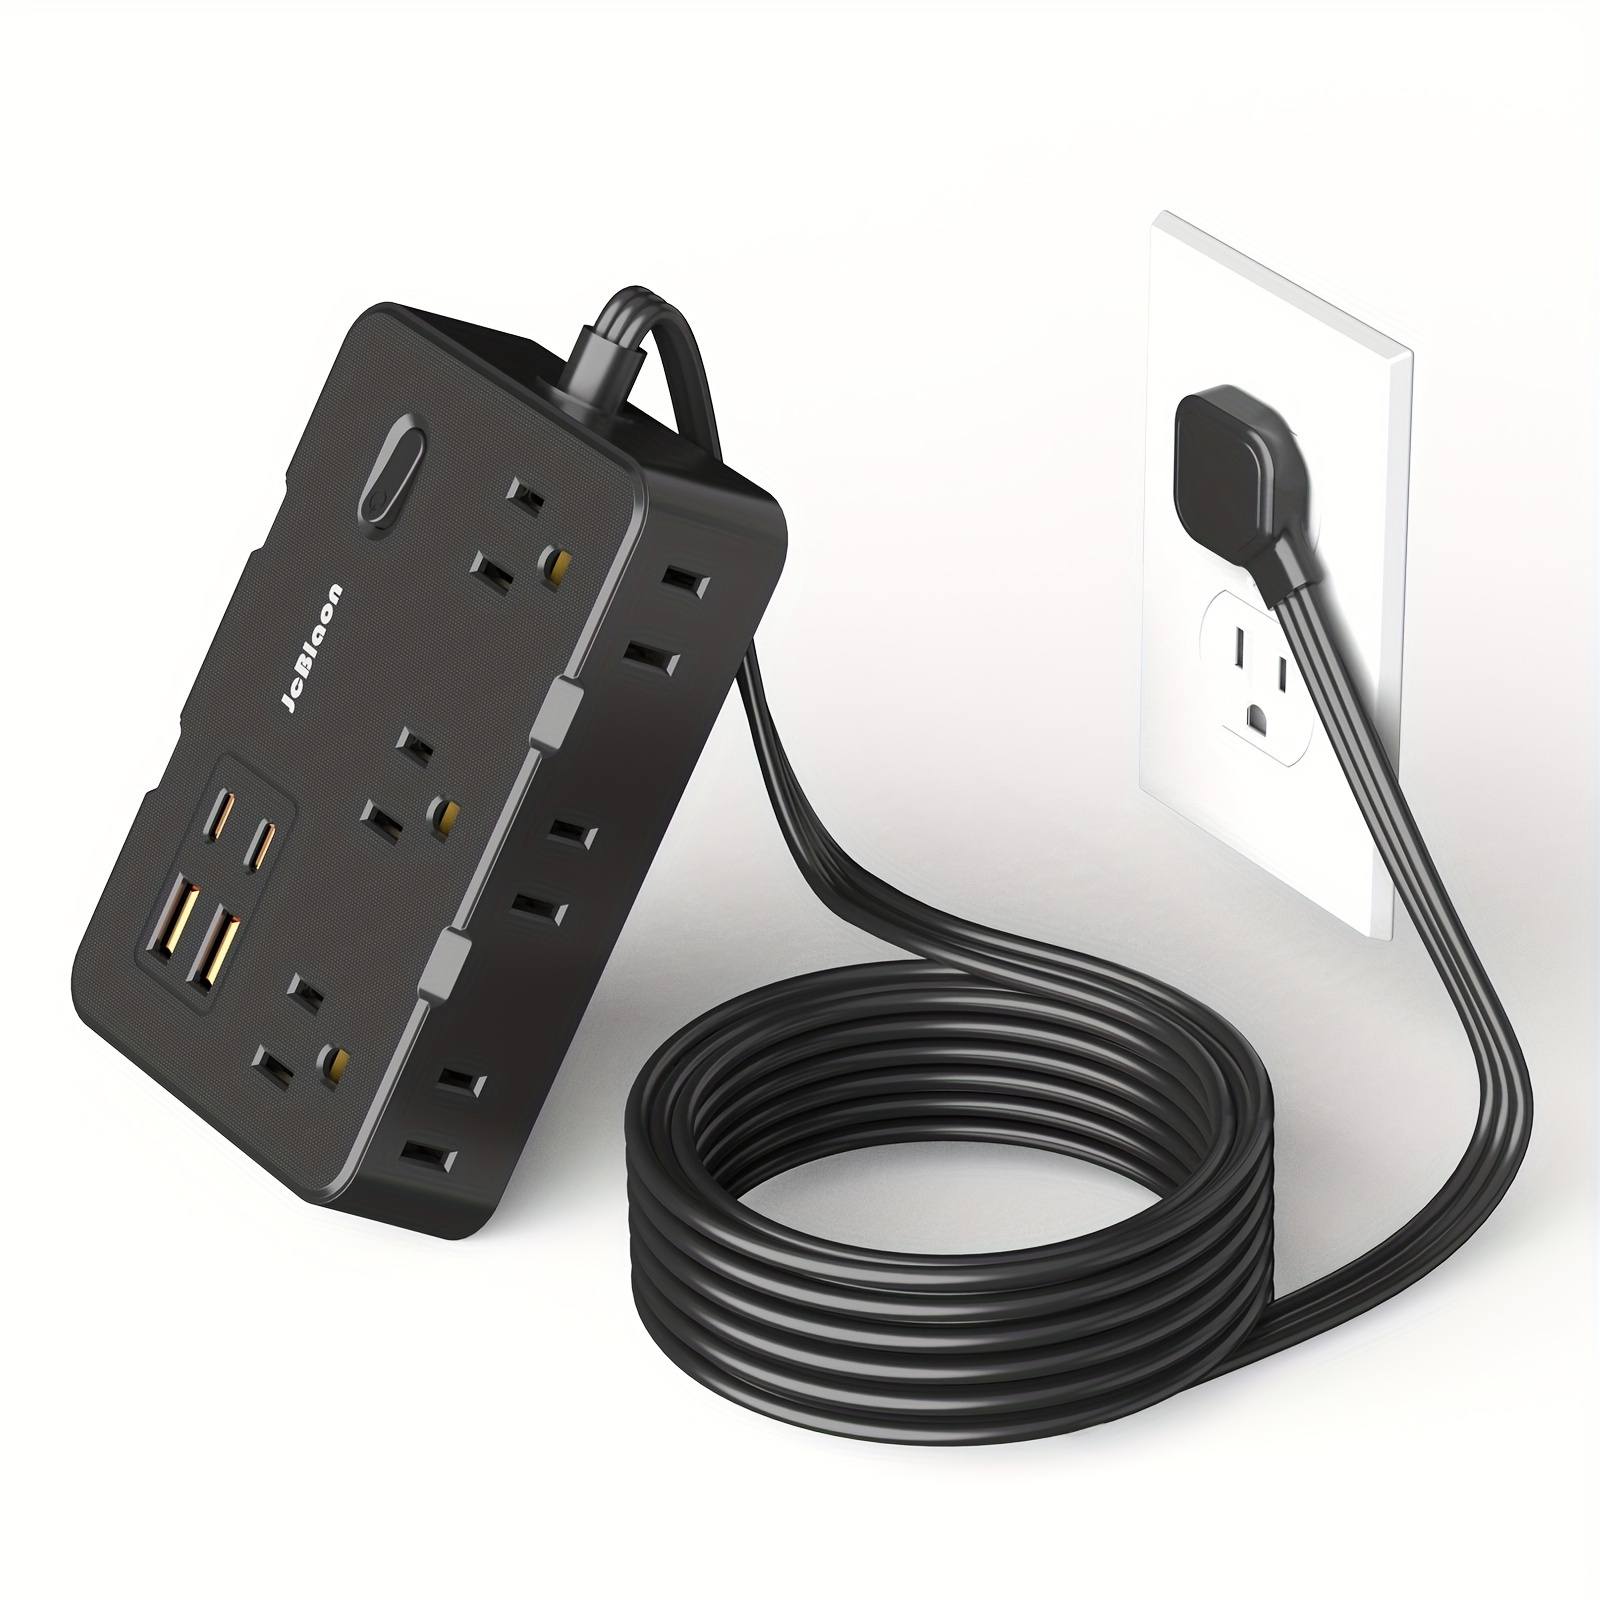  HOPOW Regleta de alimentación de enchufe plano con  interruptores individuales, cable de extensión plano ultrafino de 10 pies,  protector de sobretensiones de 5 salidas con 2 USB-C (20 W PD) y